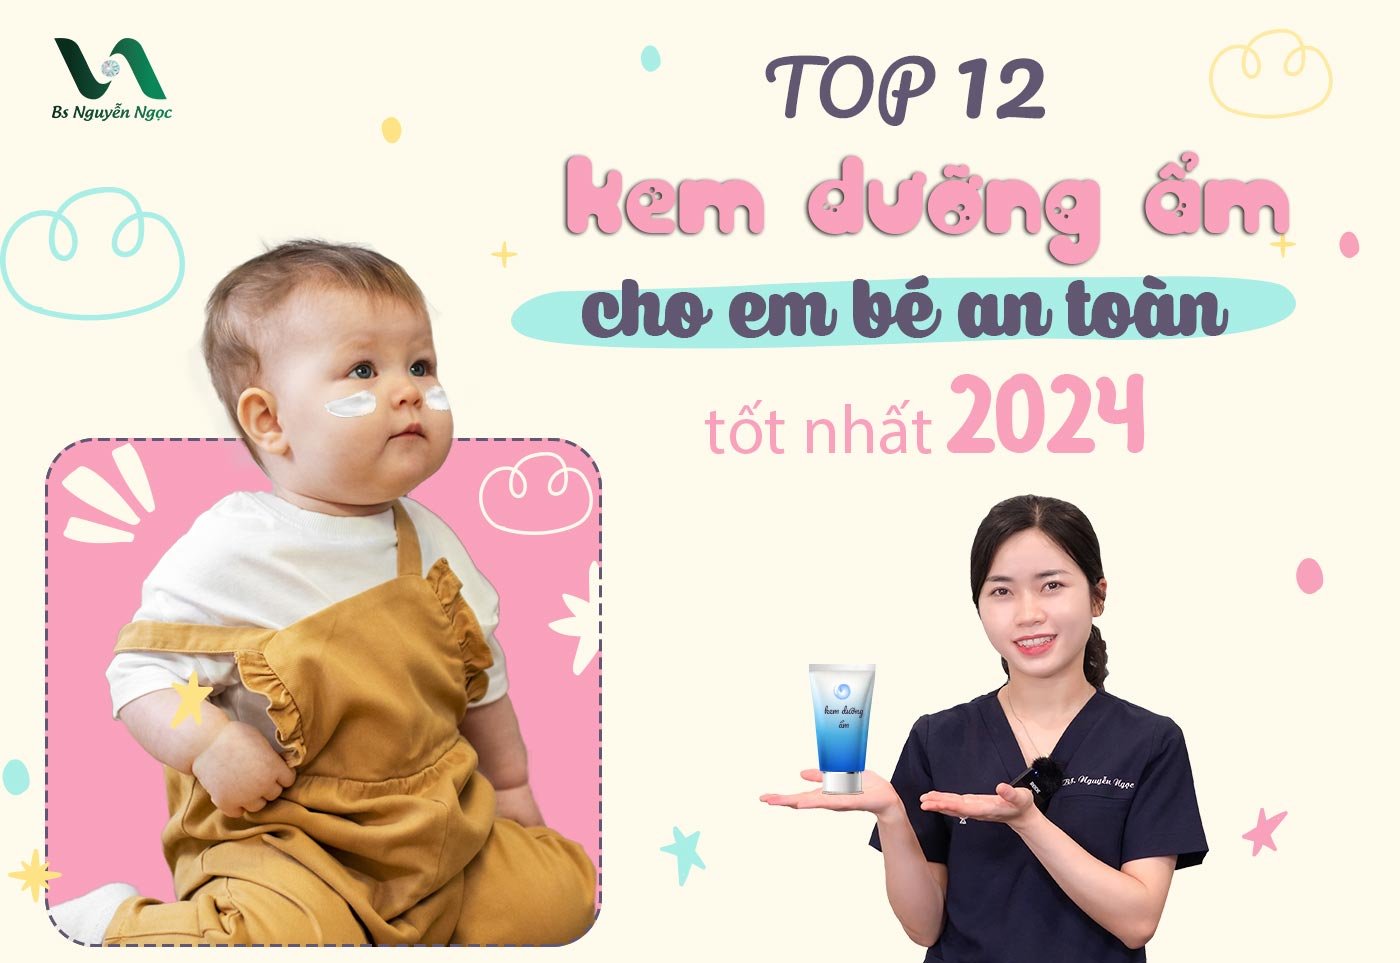 Top 12 kem dưỡng ẩm cho em bé an toàn tốt nhất 2024